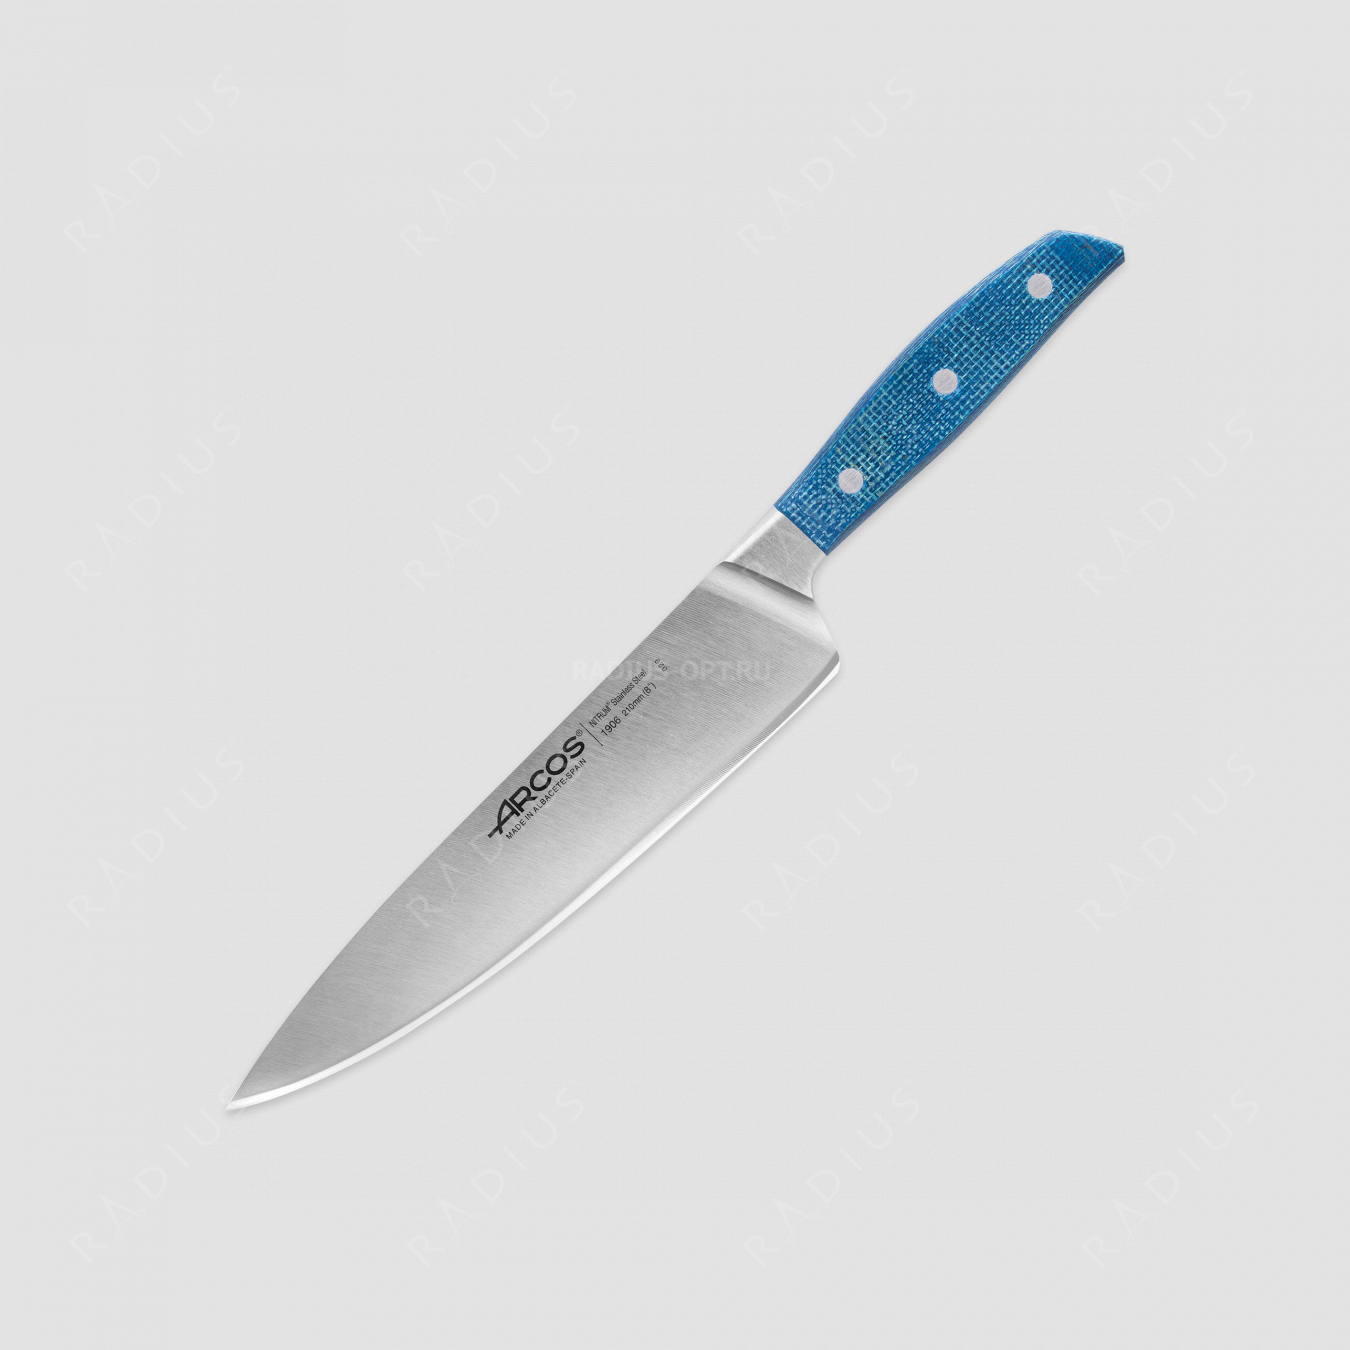 Профессиональный поварской кухонный нож 21 см, серия Brooklyn, ARCOS, Испания